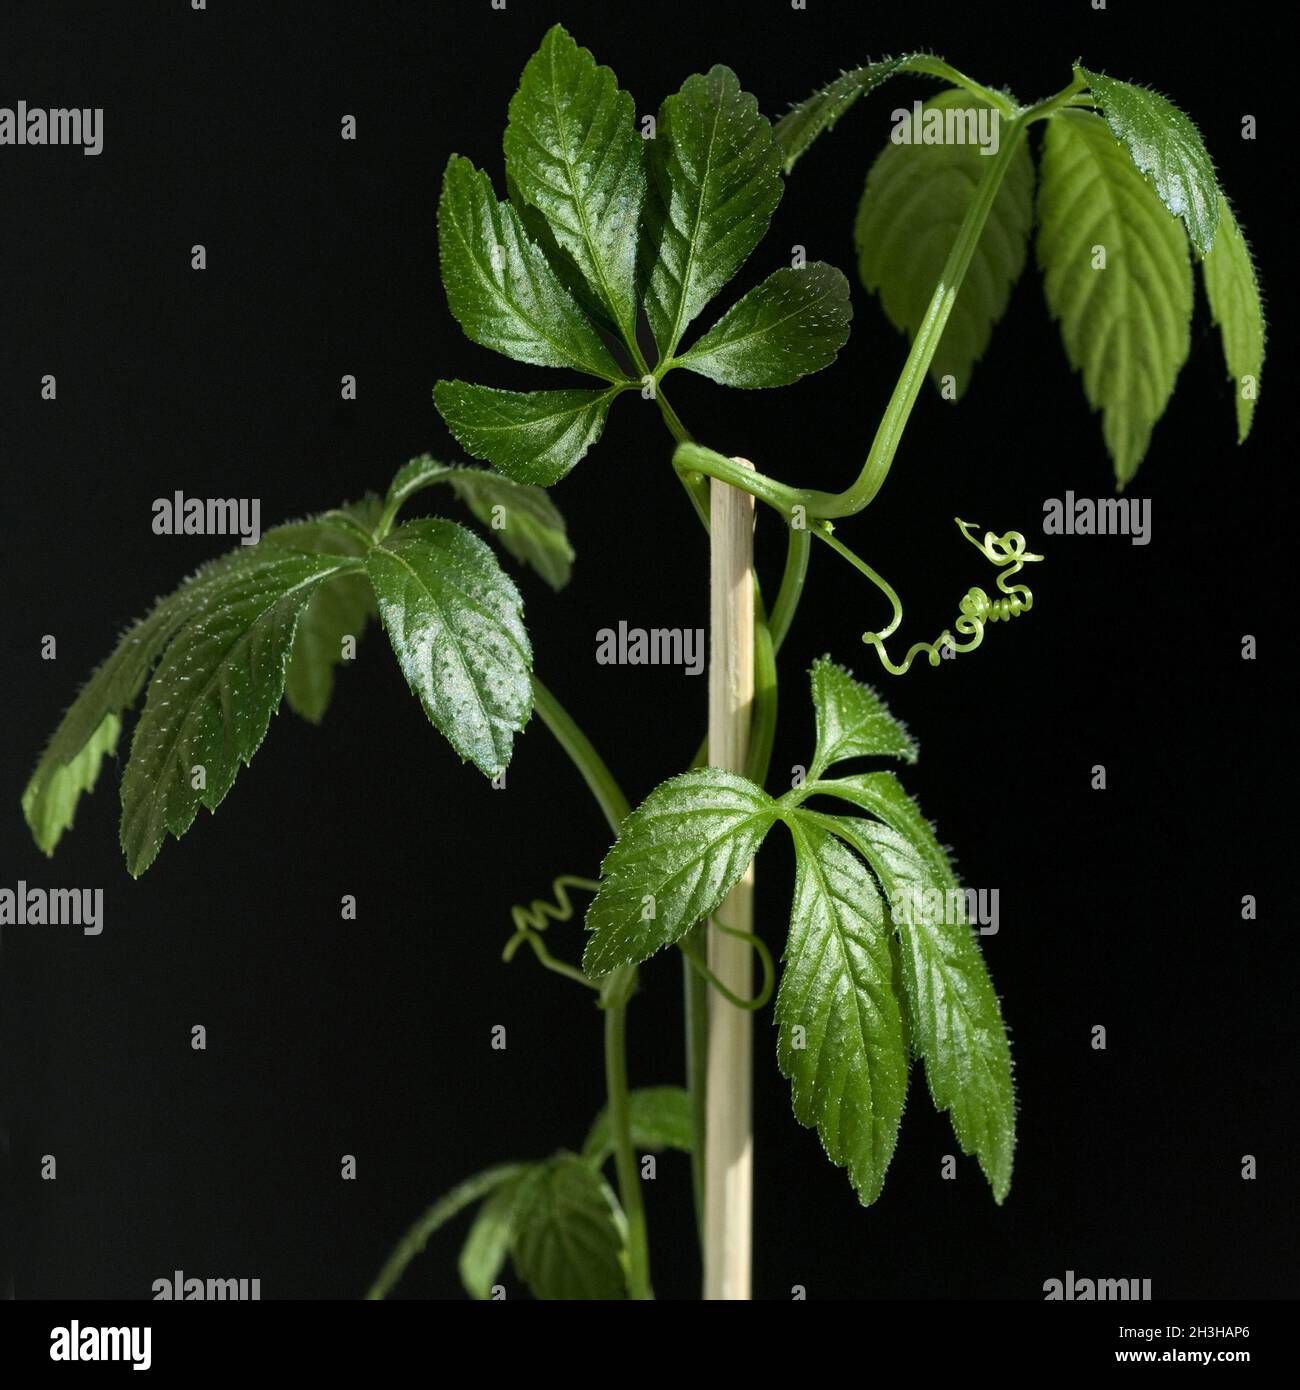 Jiaogulan, immortality herb, Gynostemma pentaphyllum Stock Photo